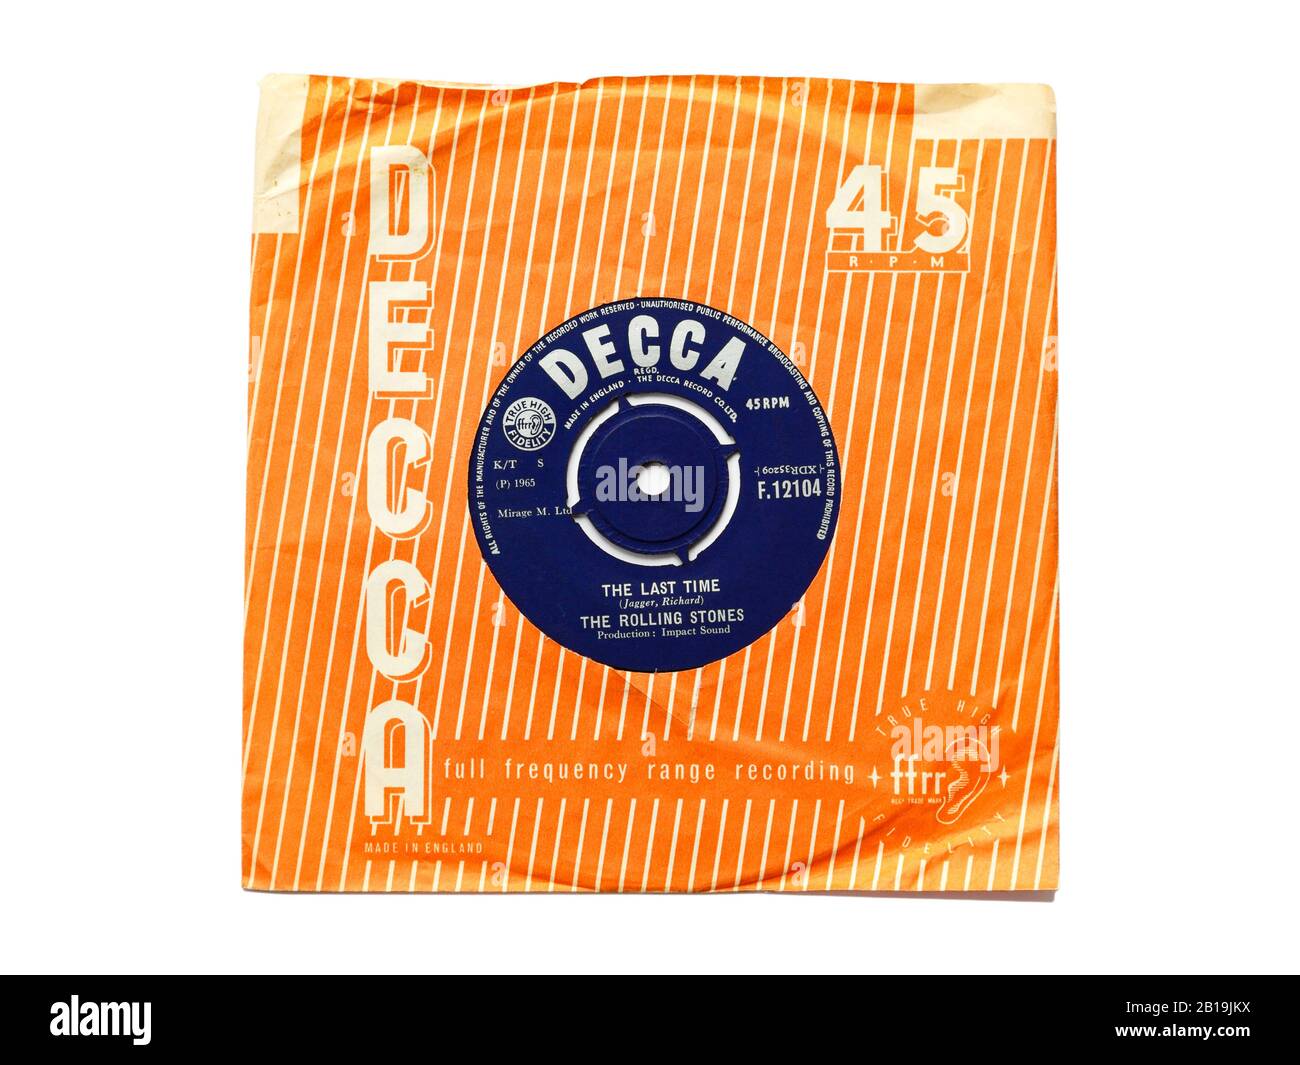 Vecchia etichetta Decca originale vinile 45 RPM registra l'ultima Volta dai Rolling Stones 1965 in sleeve di carta strappata isolato su bianco. Foto Stock